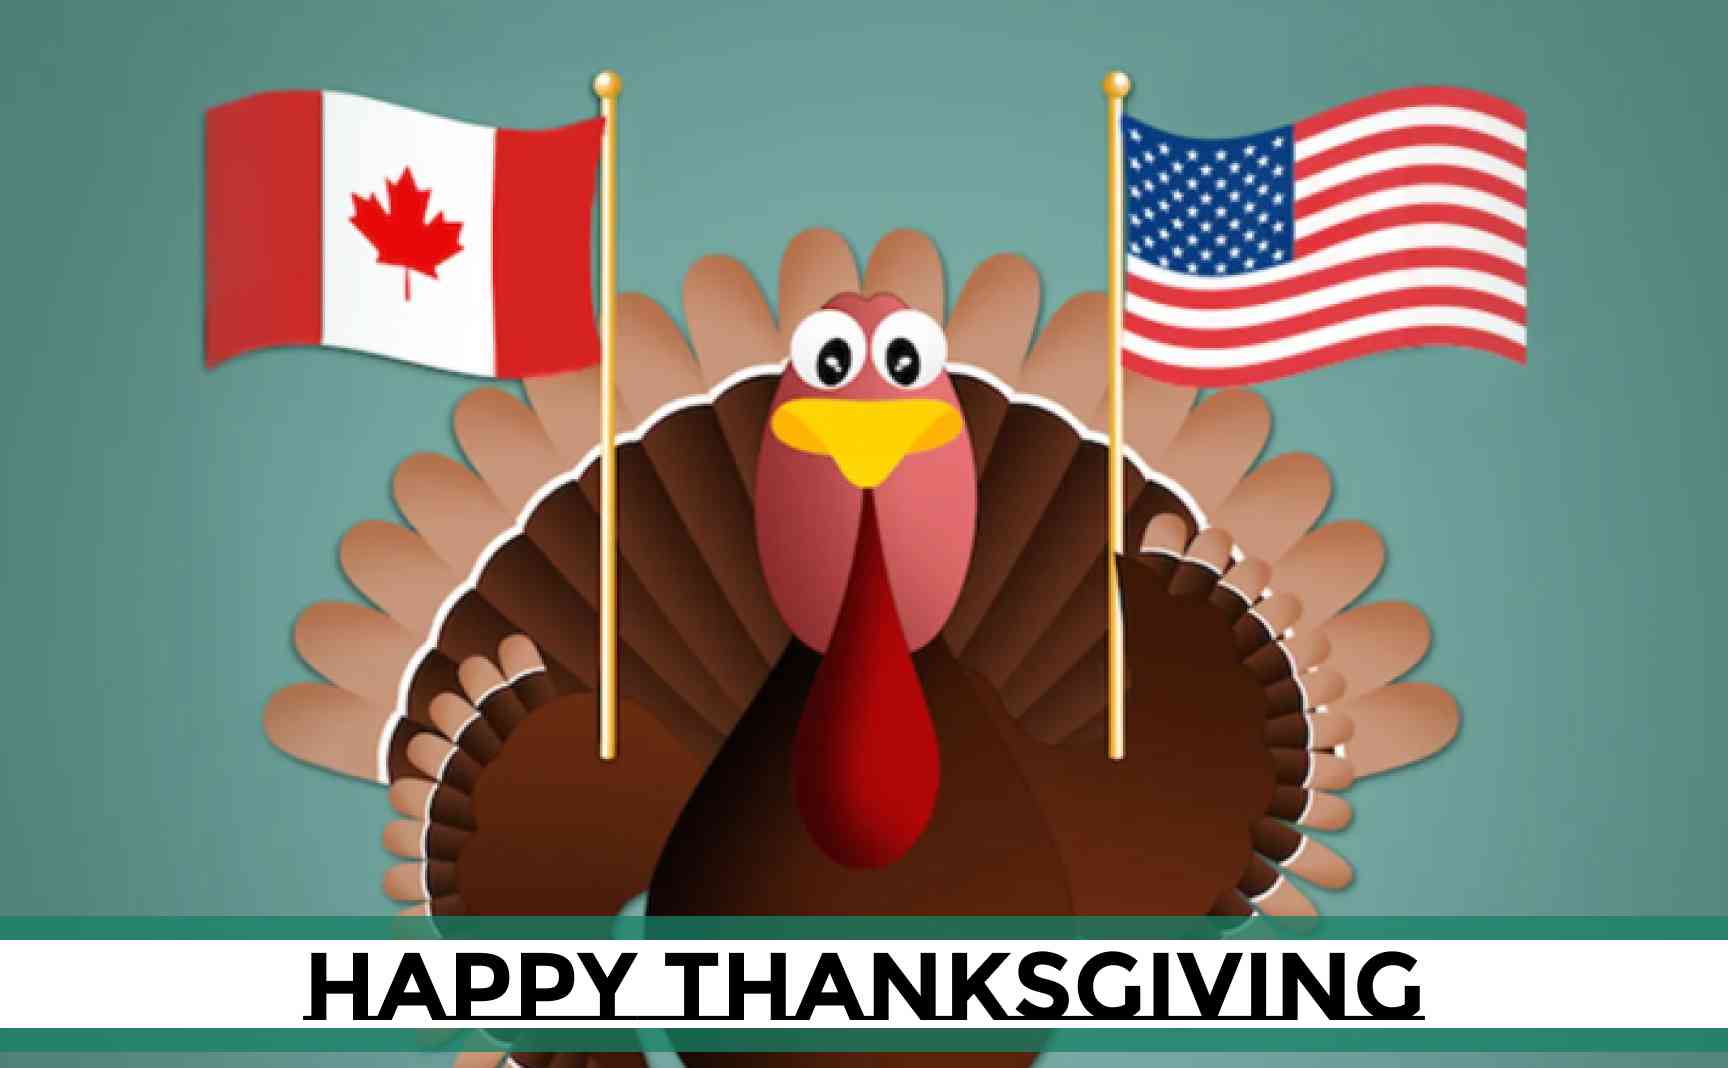 عيد الشكر الأمريكي والكندي: ما الذي يجعلهما متشابهين أو مختلفين